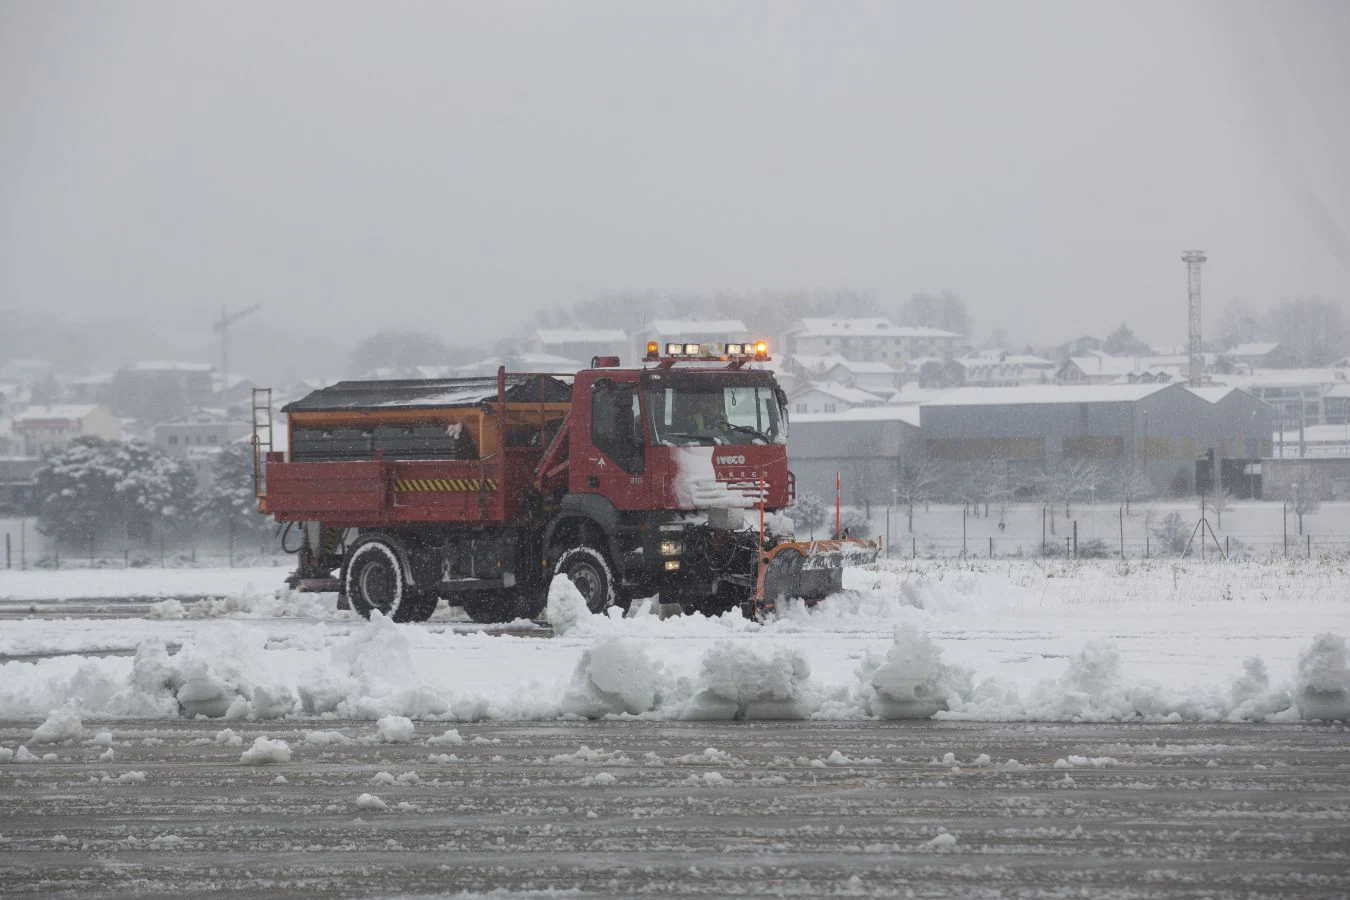 La nieve ha generado importantes problemas en Hondarribia a primera hora. De hecho, el aeropuerto ha permanecido cerrado durante la mañana